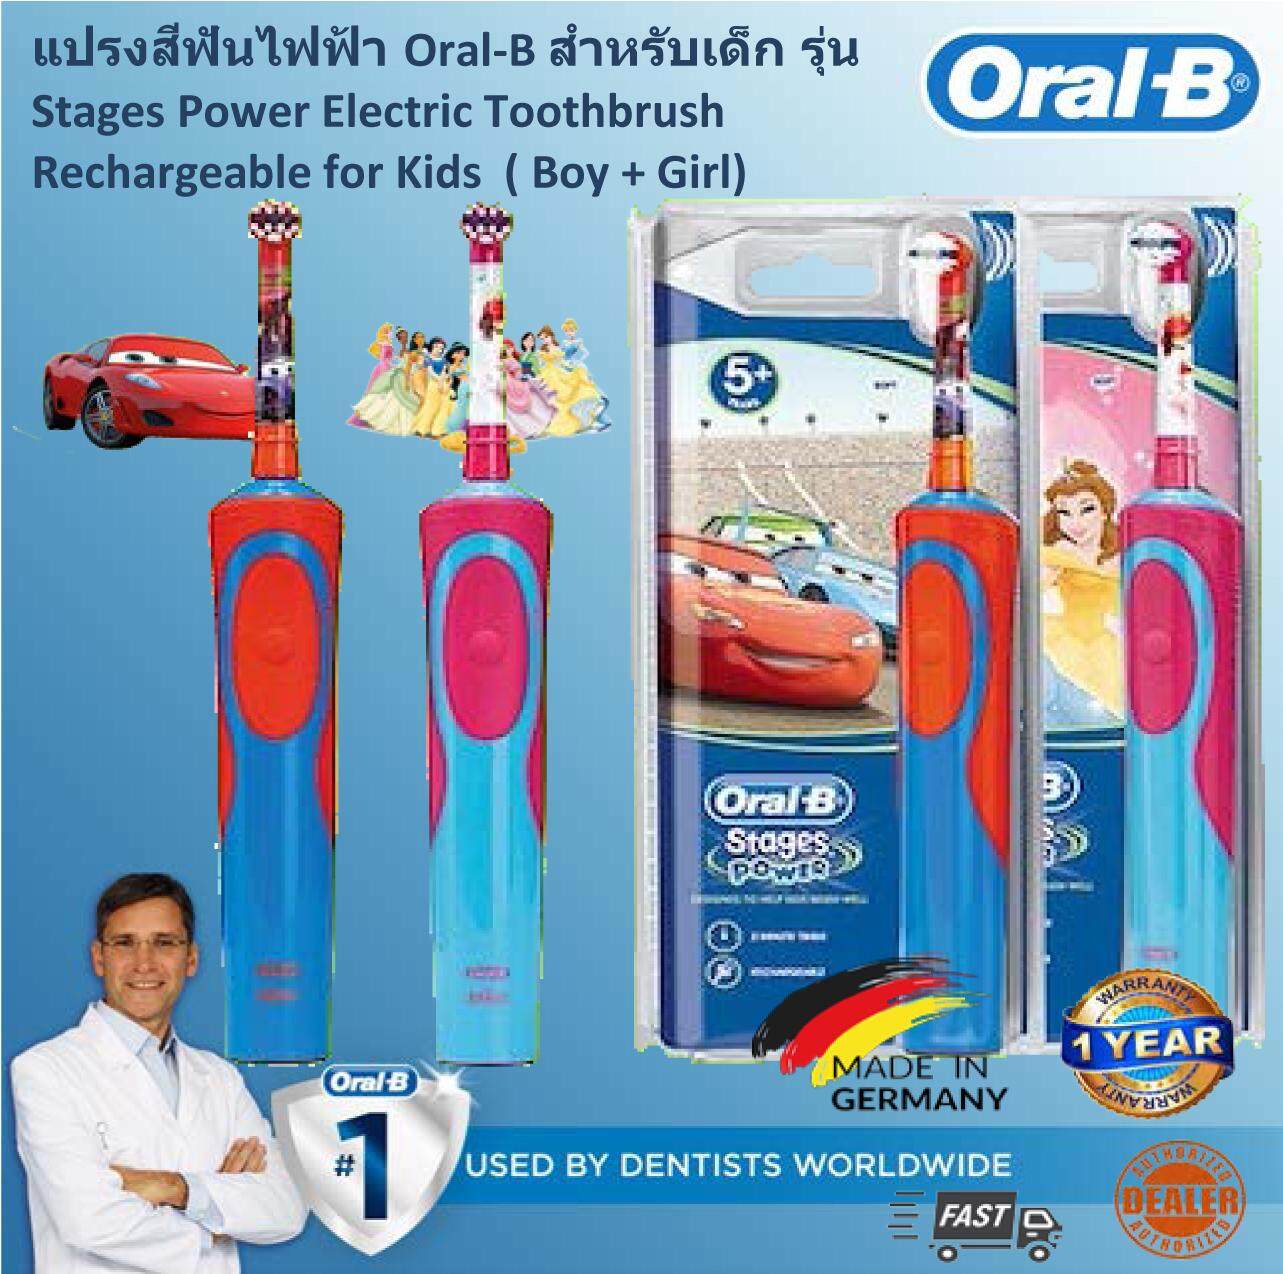 แปรงสีฟันไฟฟ้า รอยยิ้มขาวสดใสใน 1 สัปดาห์ โคราชกรุงเทพมหานคร Oral B Stages Power Kids Electric Toothbrush  Disney Car  Princess  แปรงสีฟันไฟฟ้าสำหรับเด็ก Oral B Stages รุ่น Disney Car   Princess